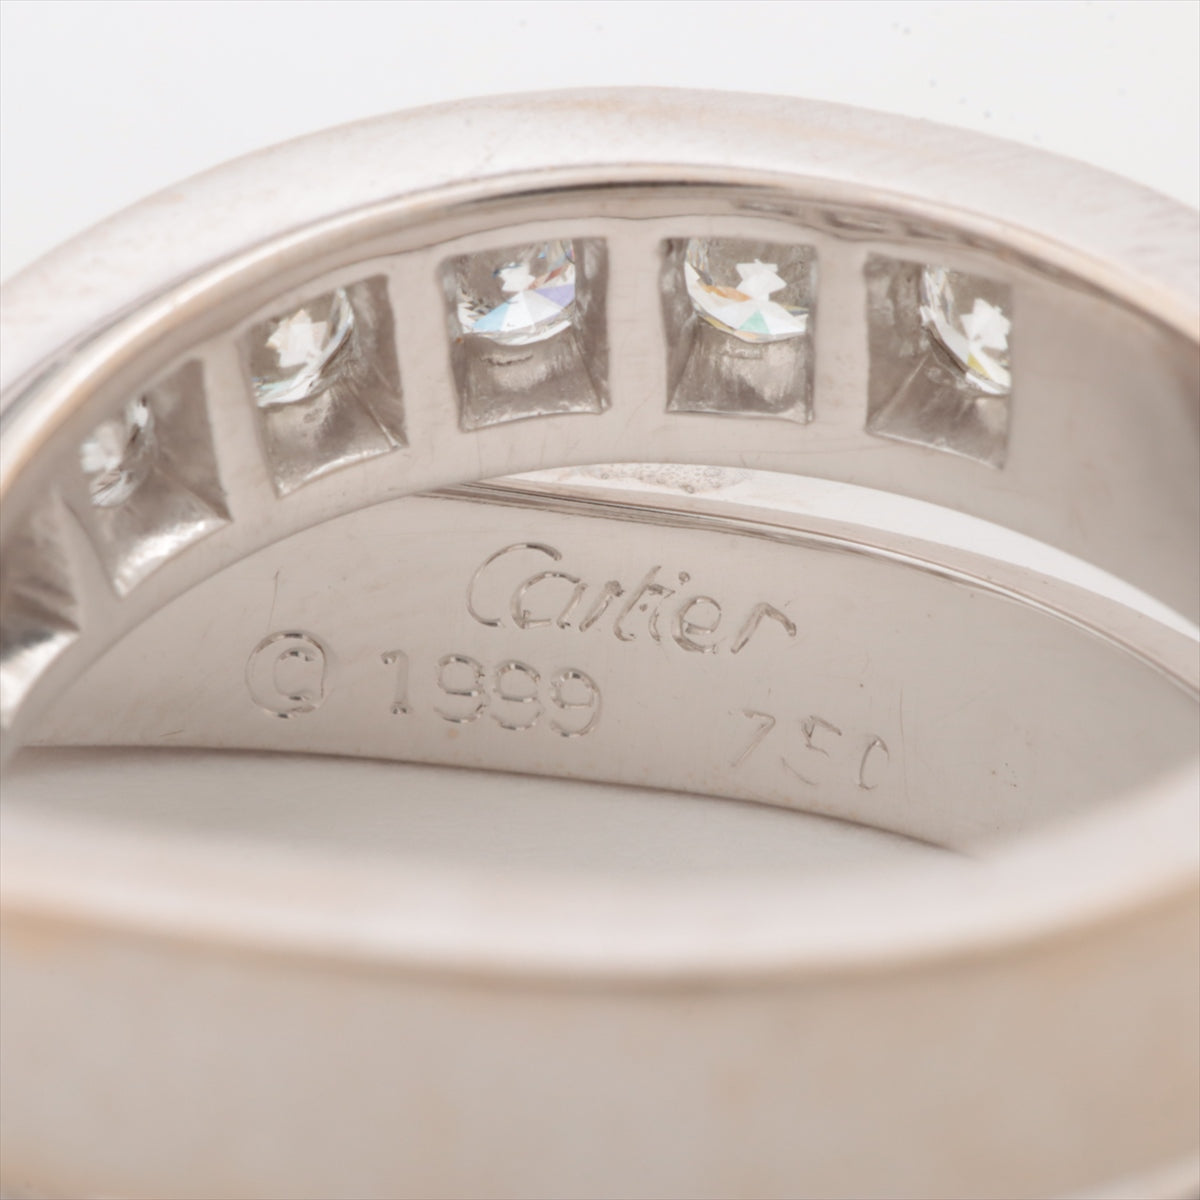 Cartier Paris Diamond Ring 750(WG) 15.1g 50